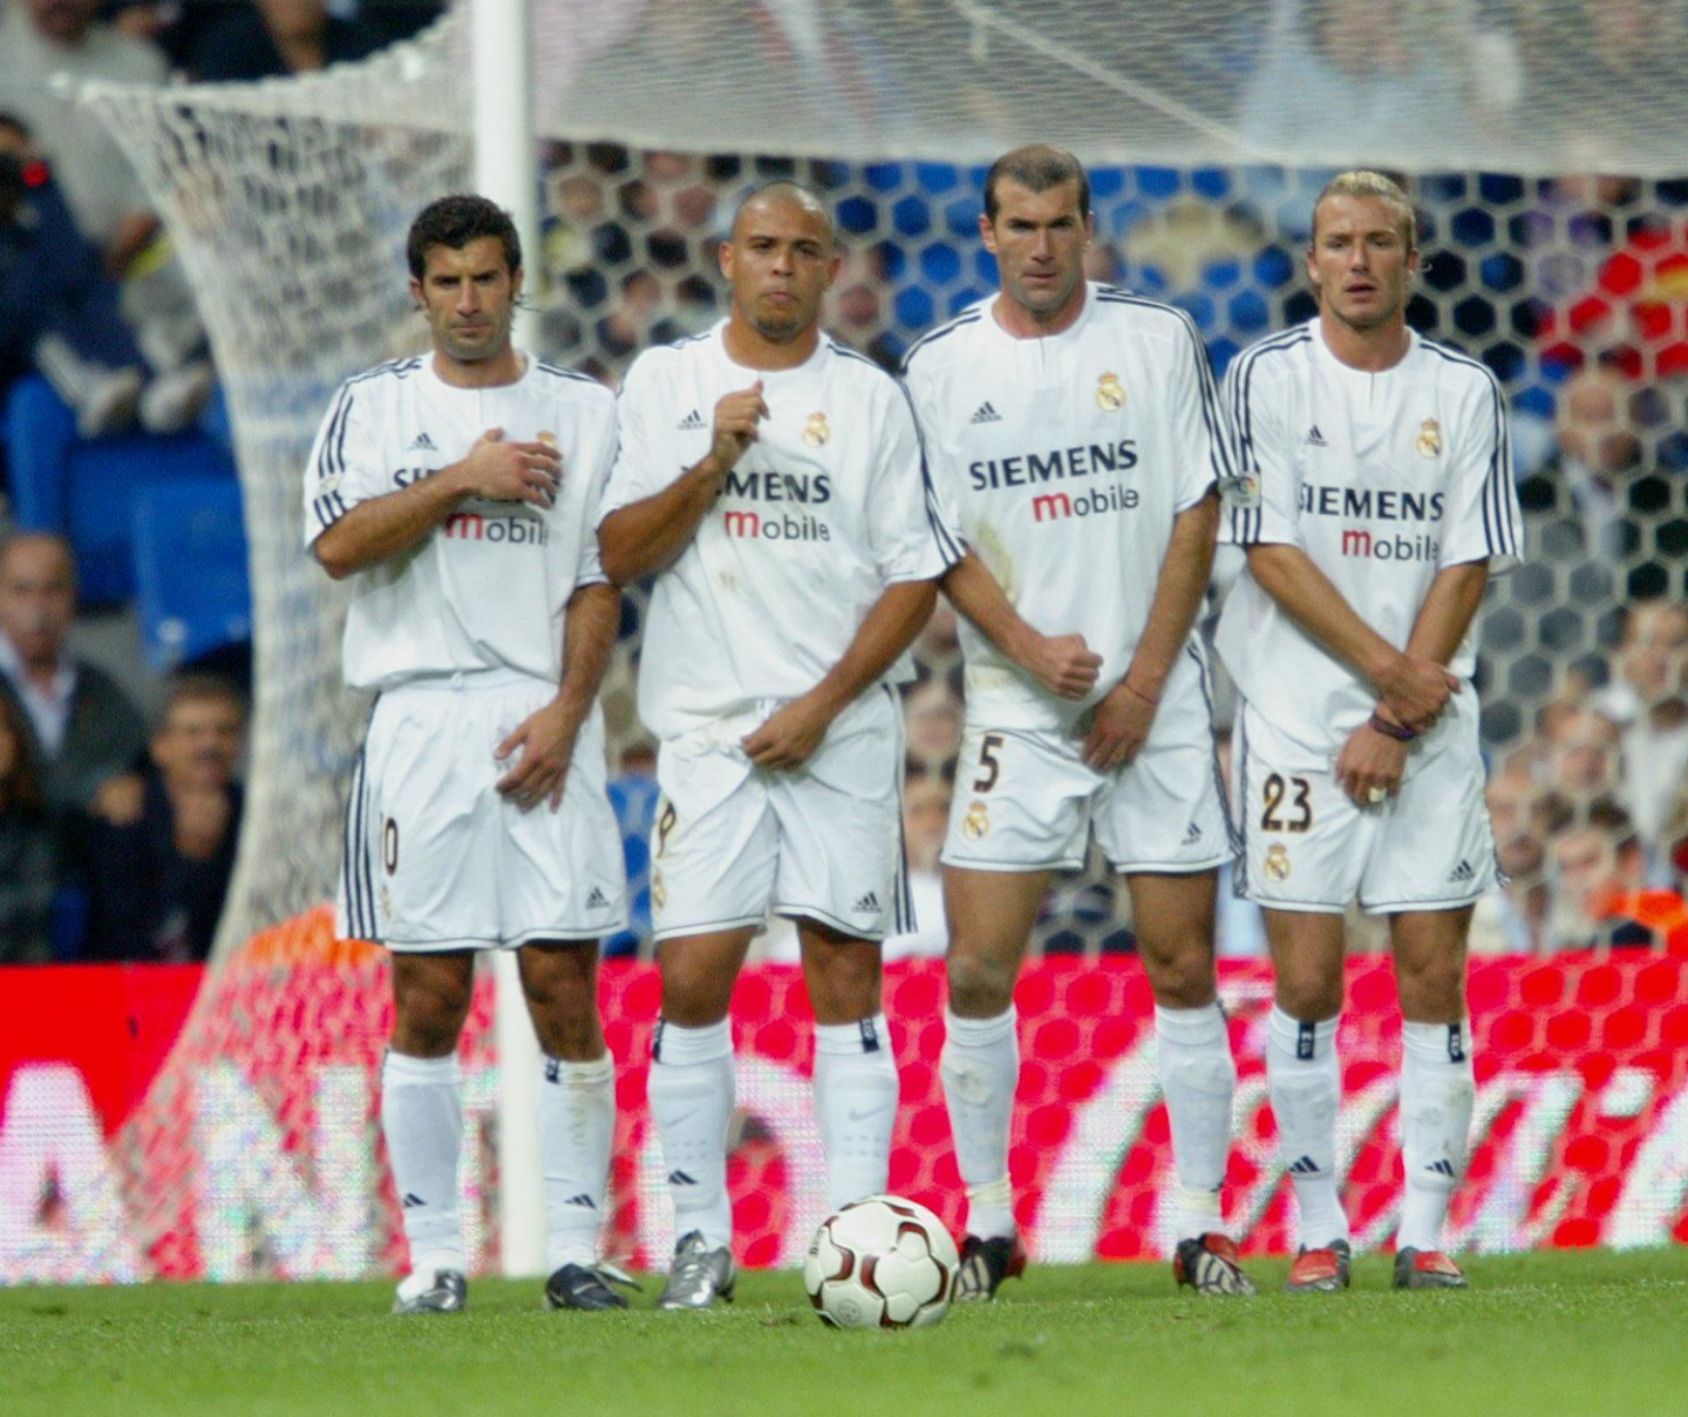 Mitos, verdades y mentiras en torno a Beckham develadas por sus ex compañeros del Real Madrid